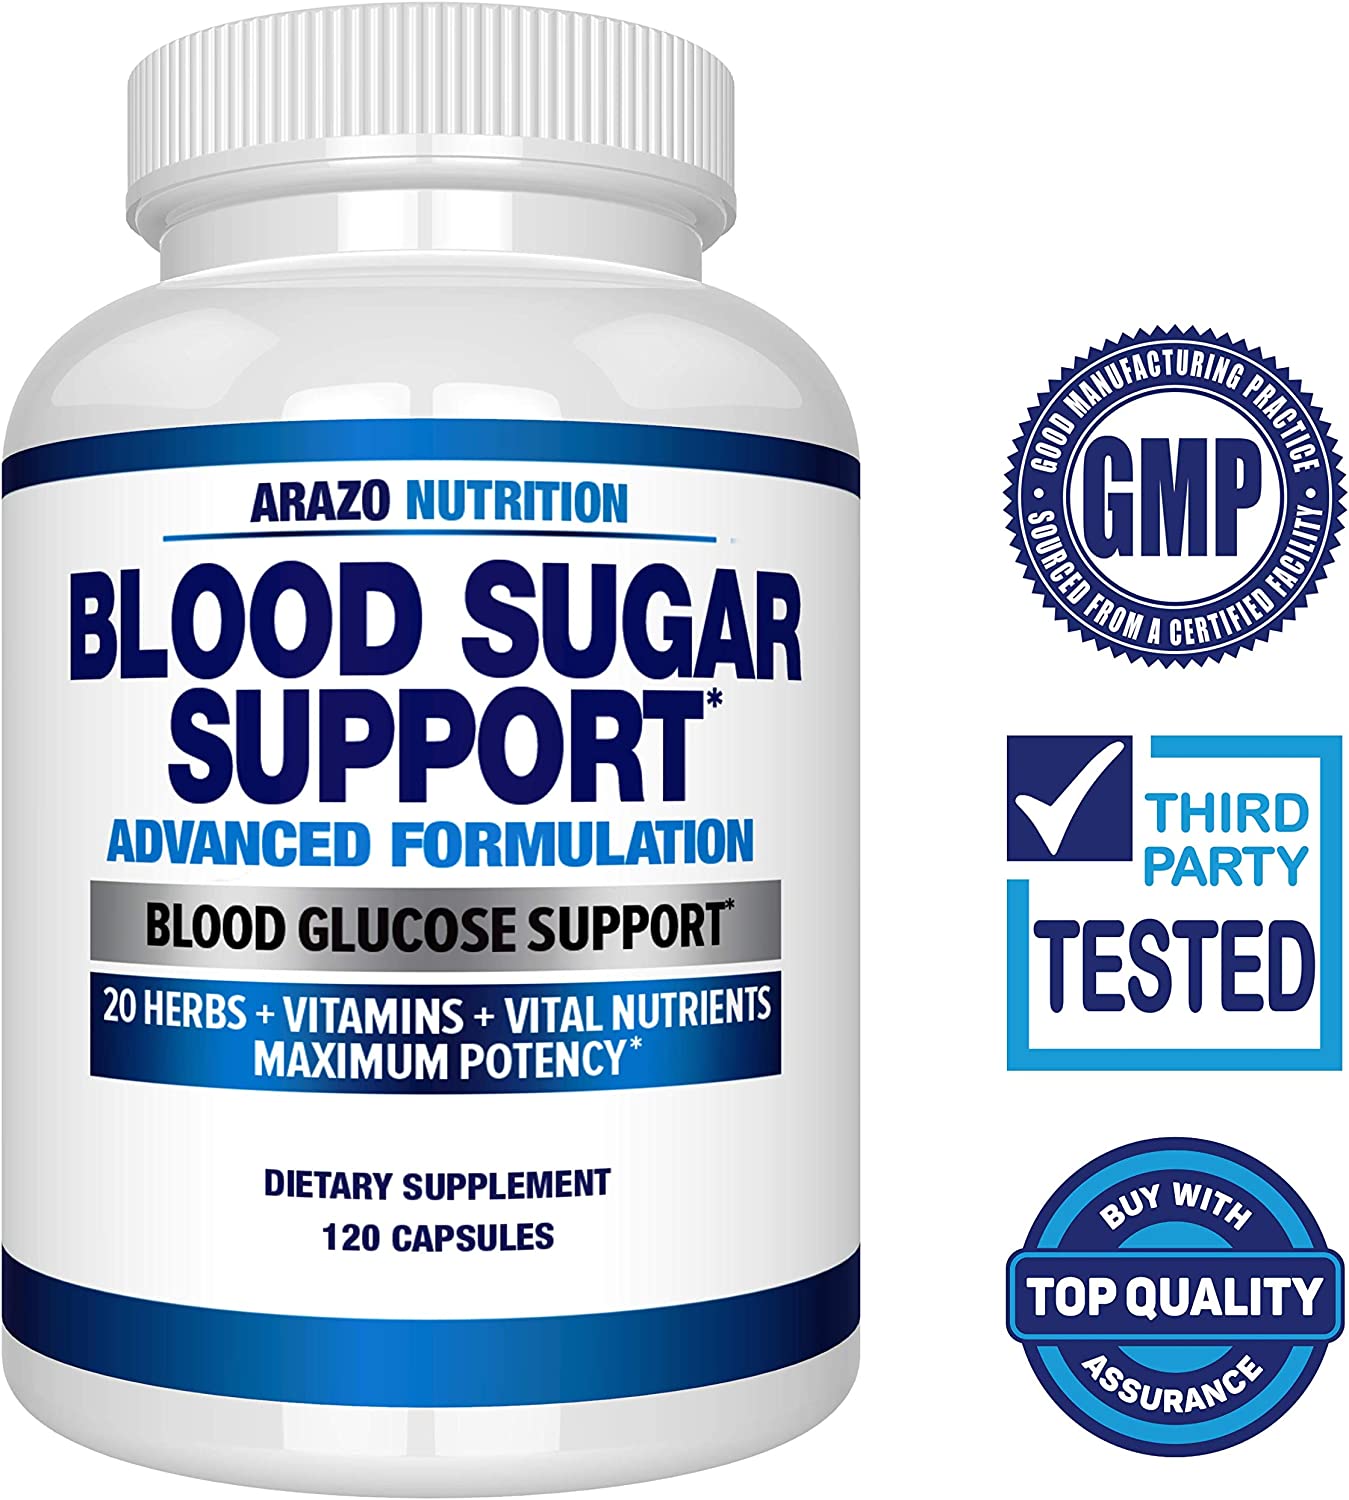 Blood Sugar Support Supplement